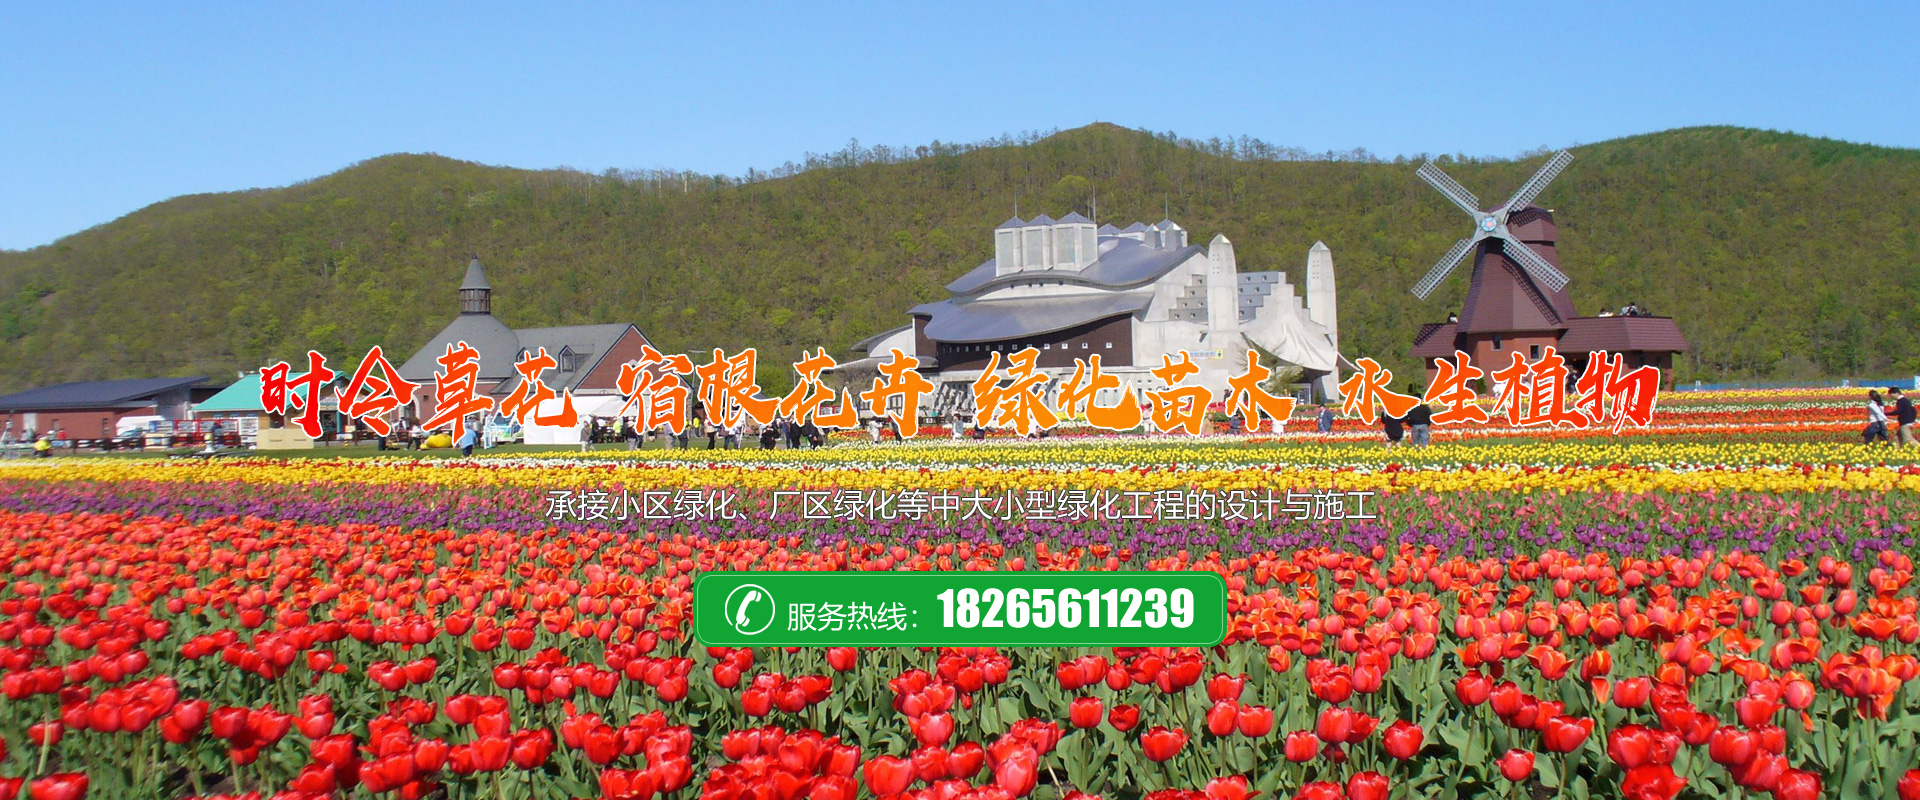 青州市凯洋花卉苗木有限公司